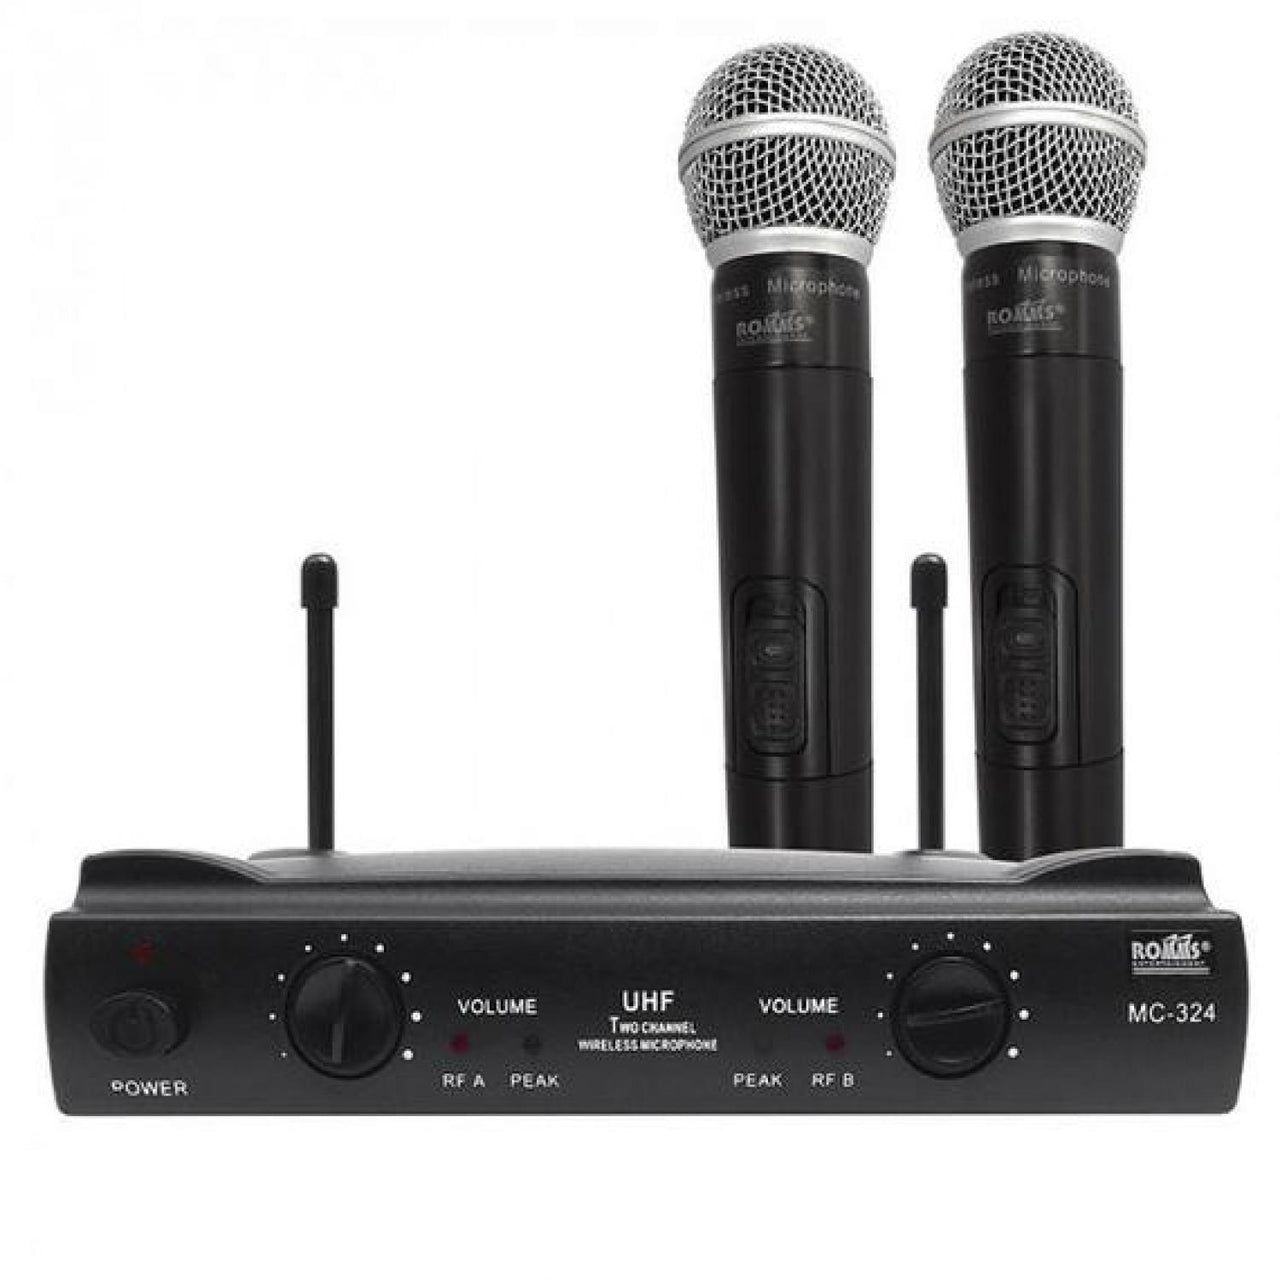 Microfono Romms Mc-324 Inalambrico Profesional Uhf